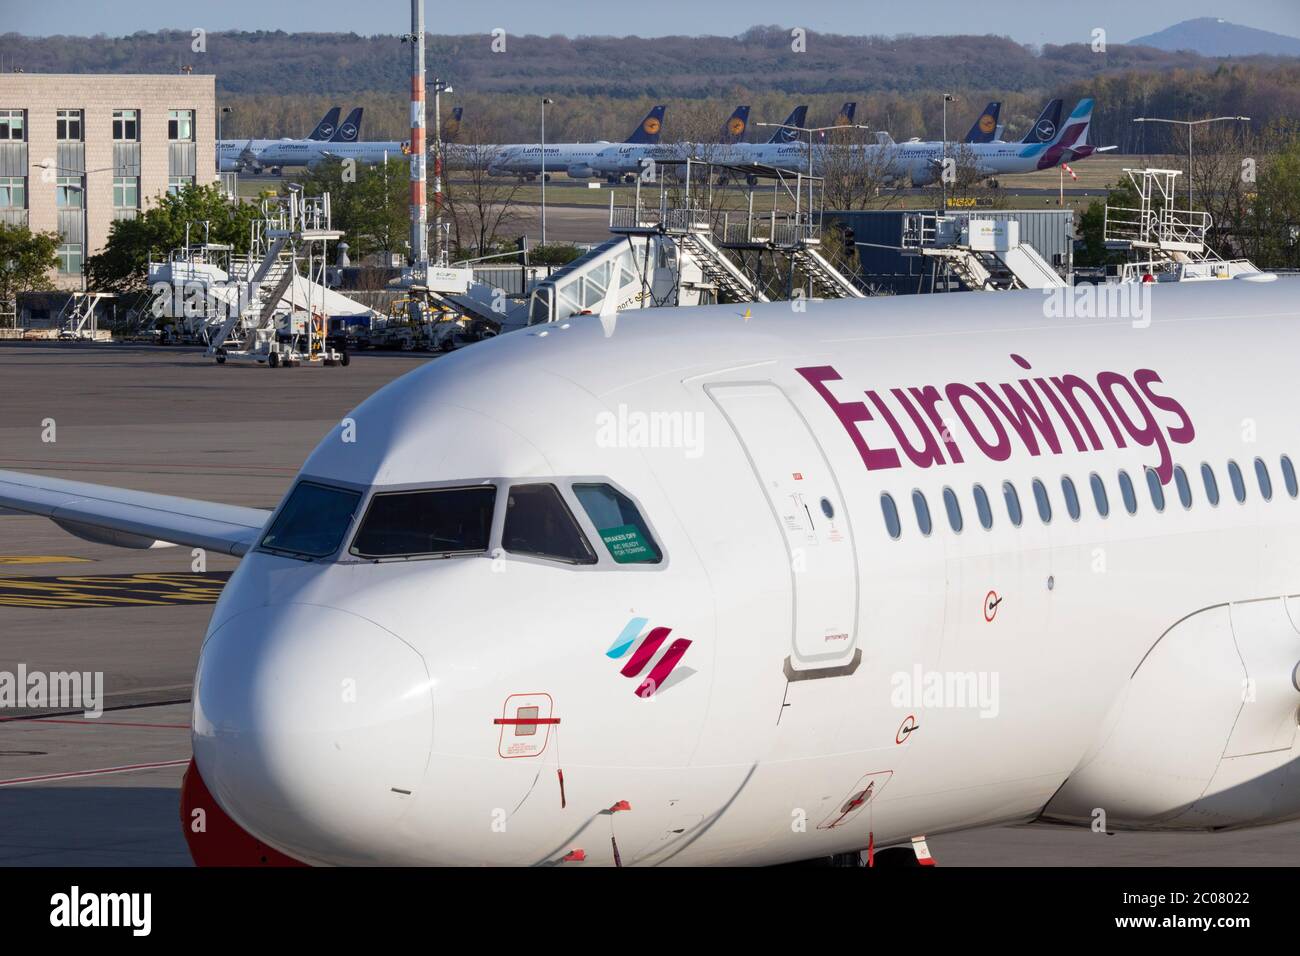 Abgestellte Flugzeuge nach vollständigem Erliegen des Personenflugverkehrs im Zusammenhang mit der Corona-Kise am Flughafen Köln/Bonn. Köln; 07.04.20 Foto de stock